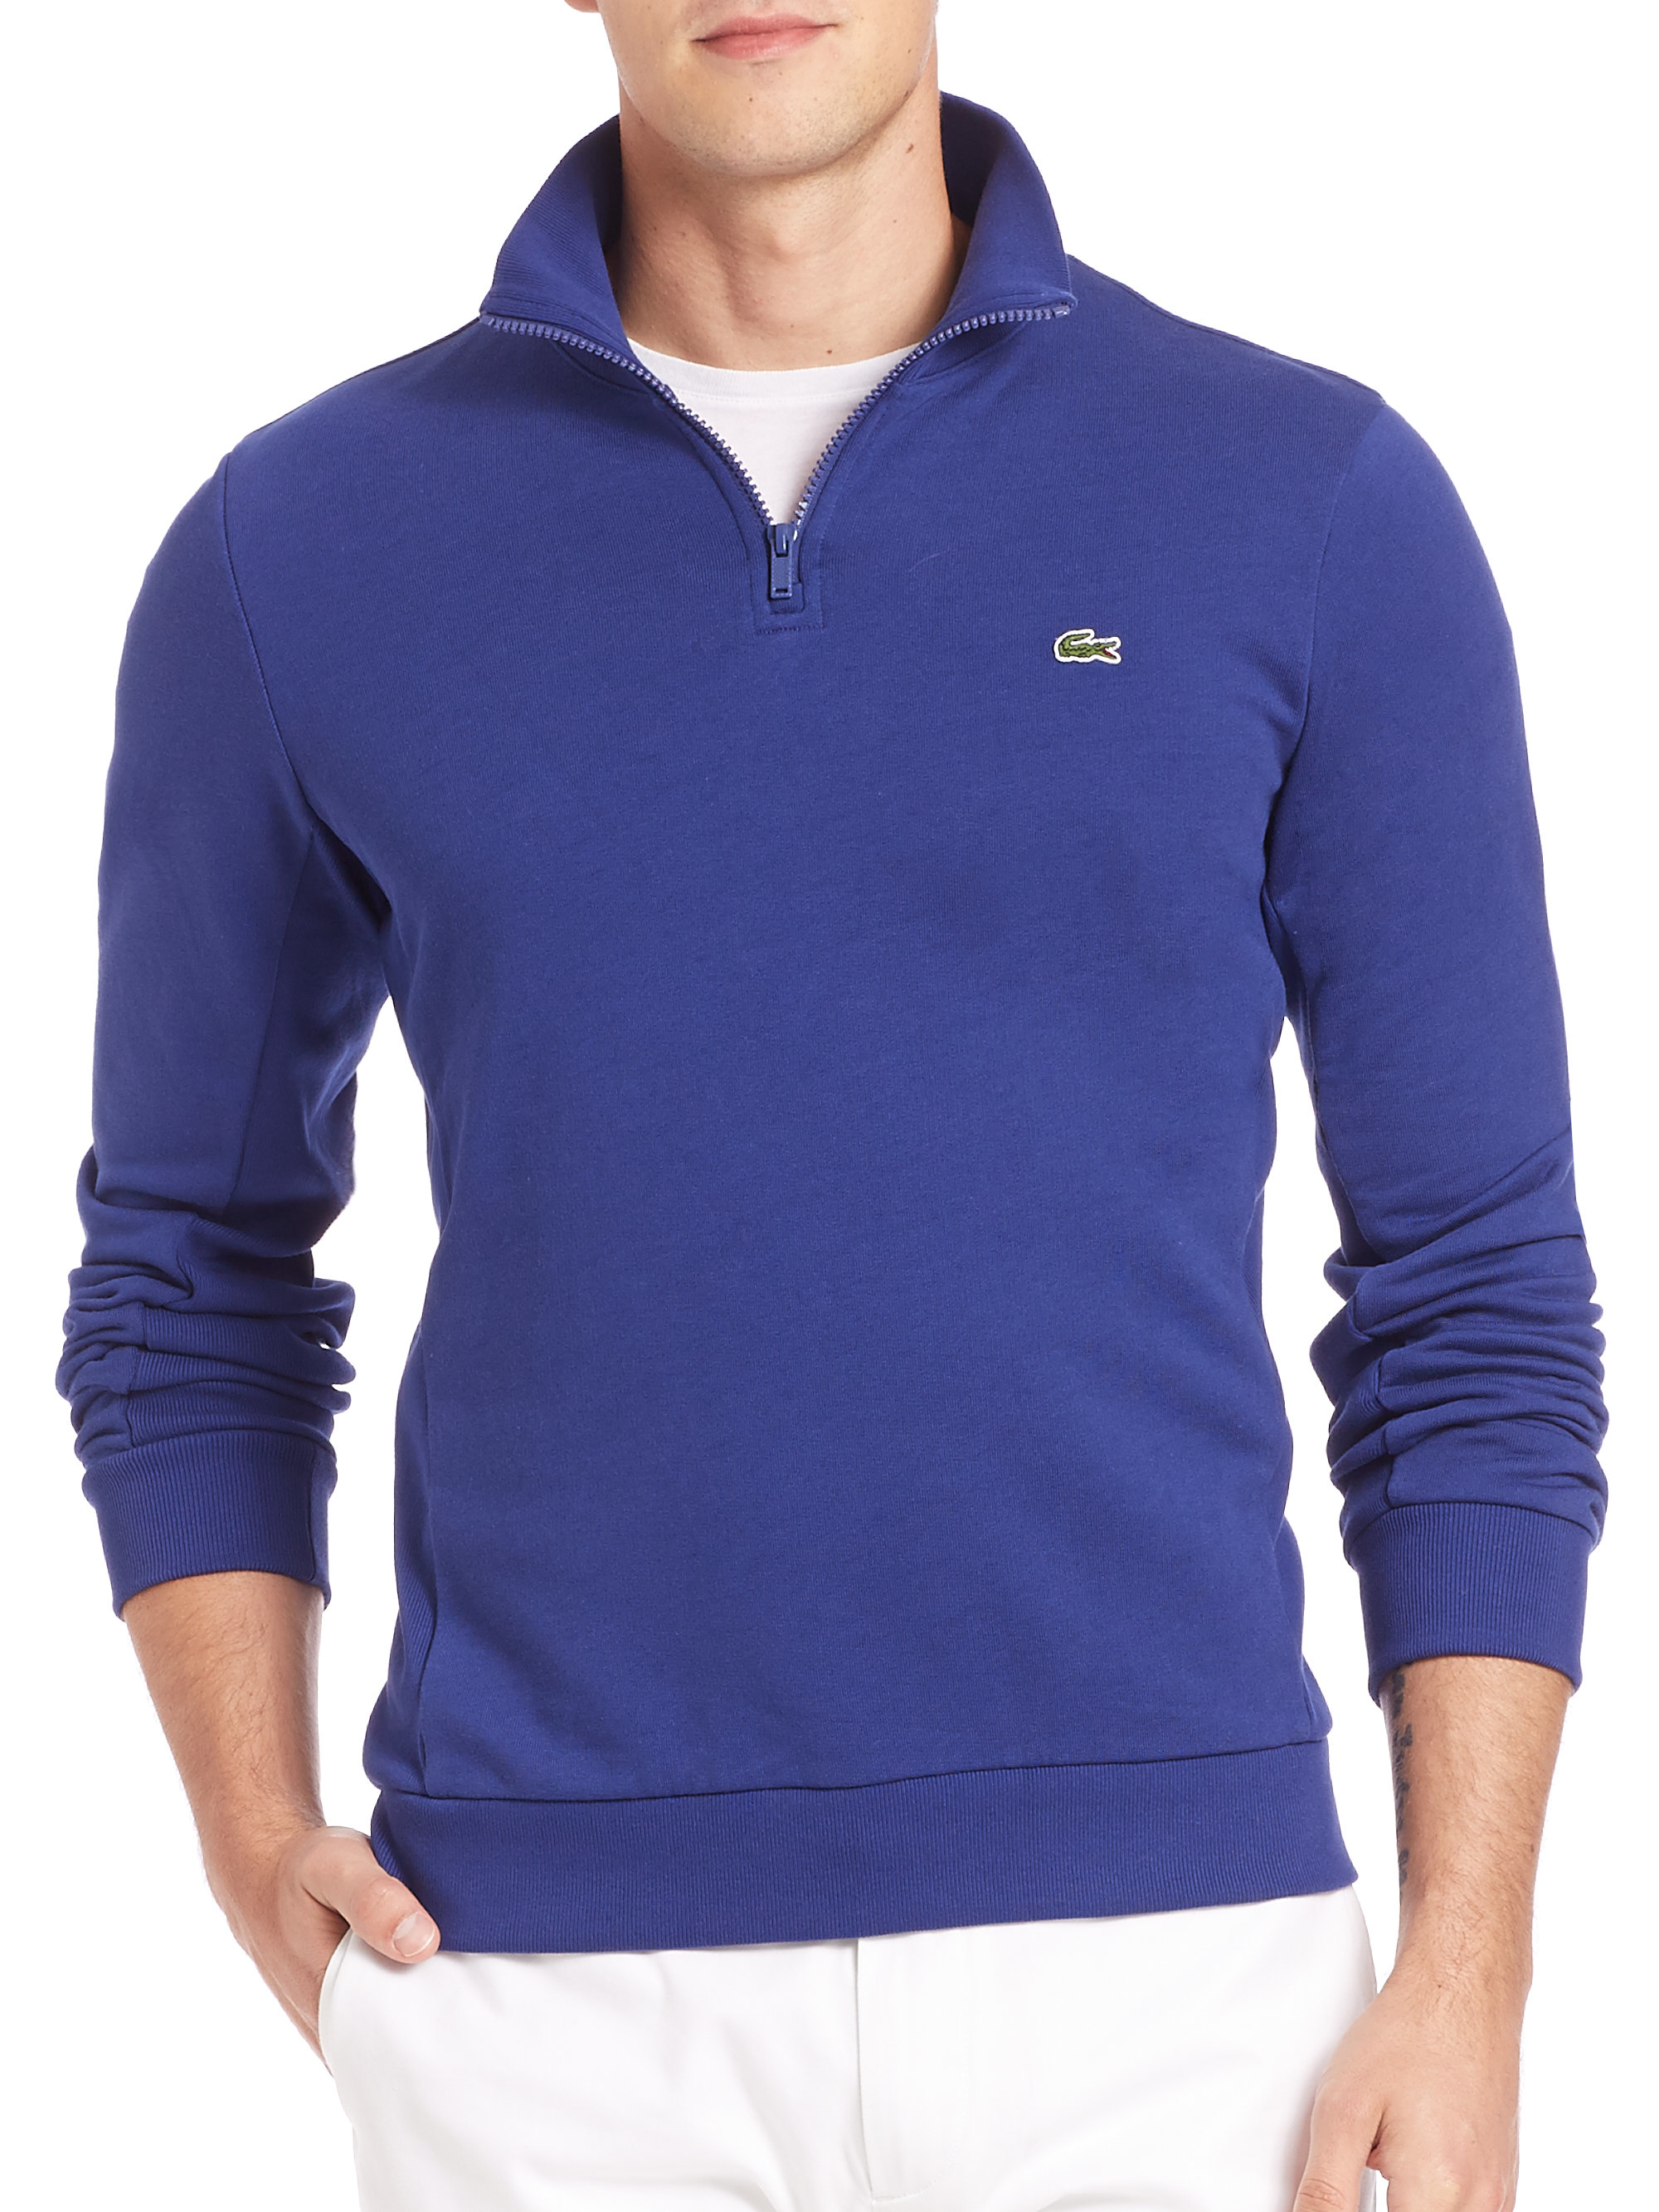 Lacoste Quarter-zip Fleece Sweatshirt in Navy (Blue) for Men - Lyst